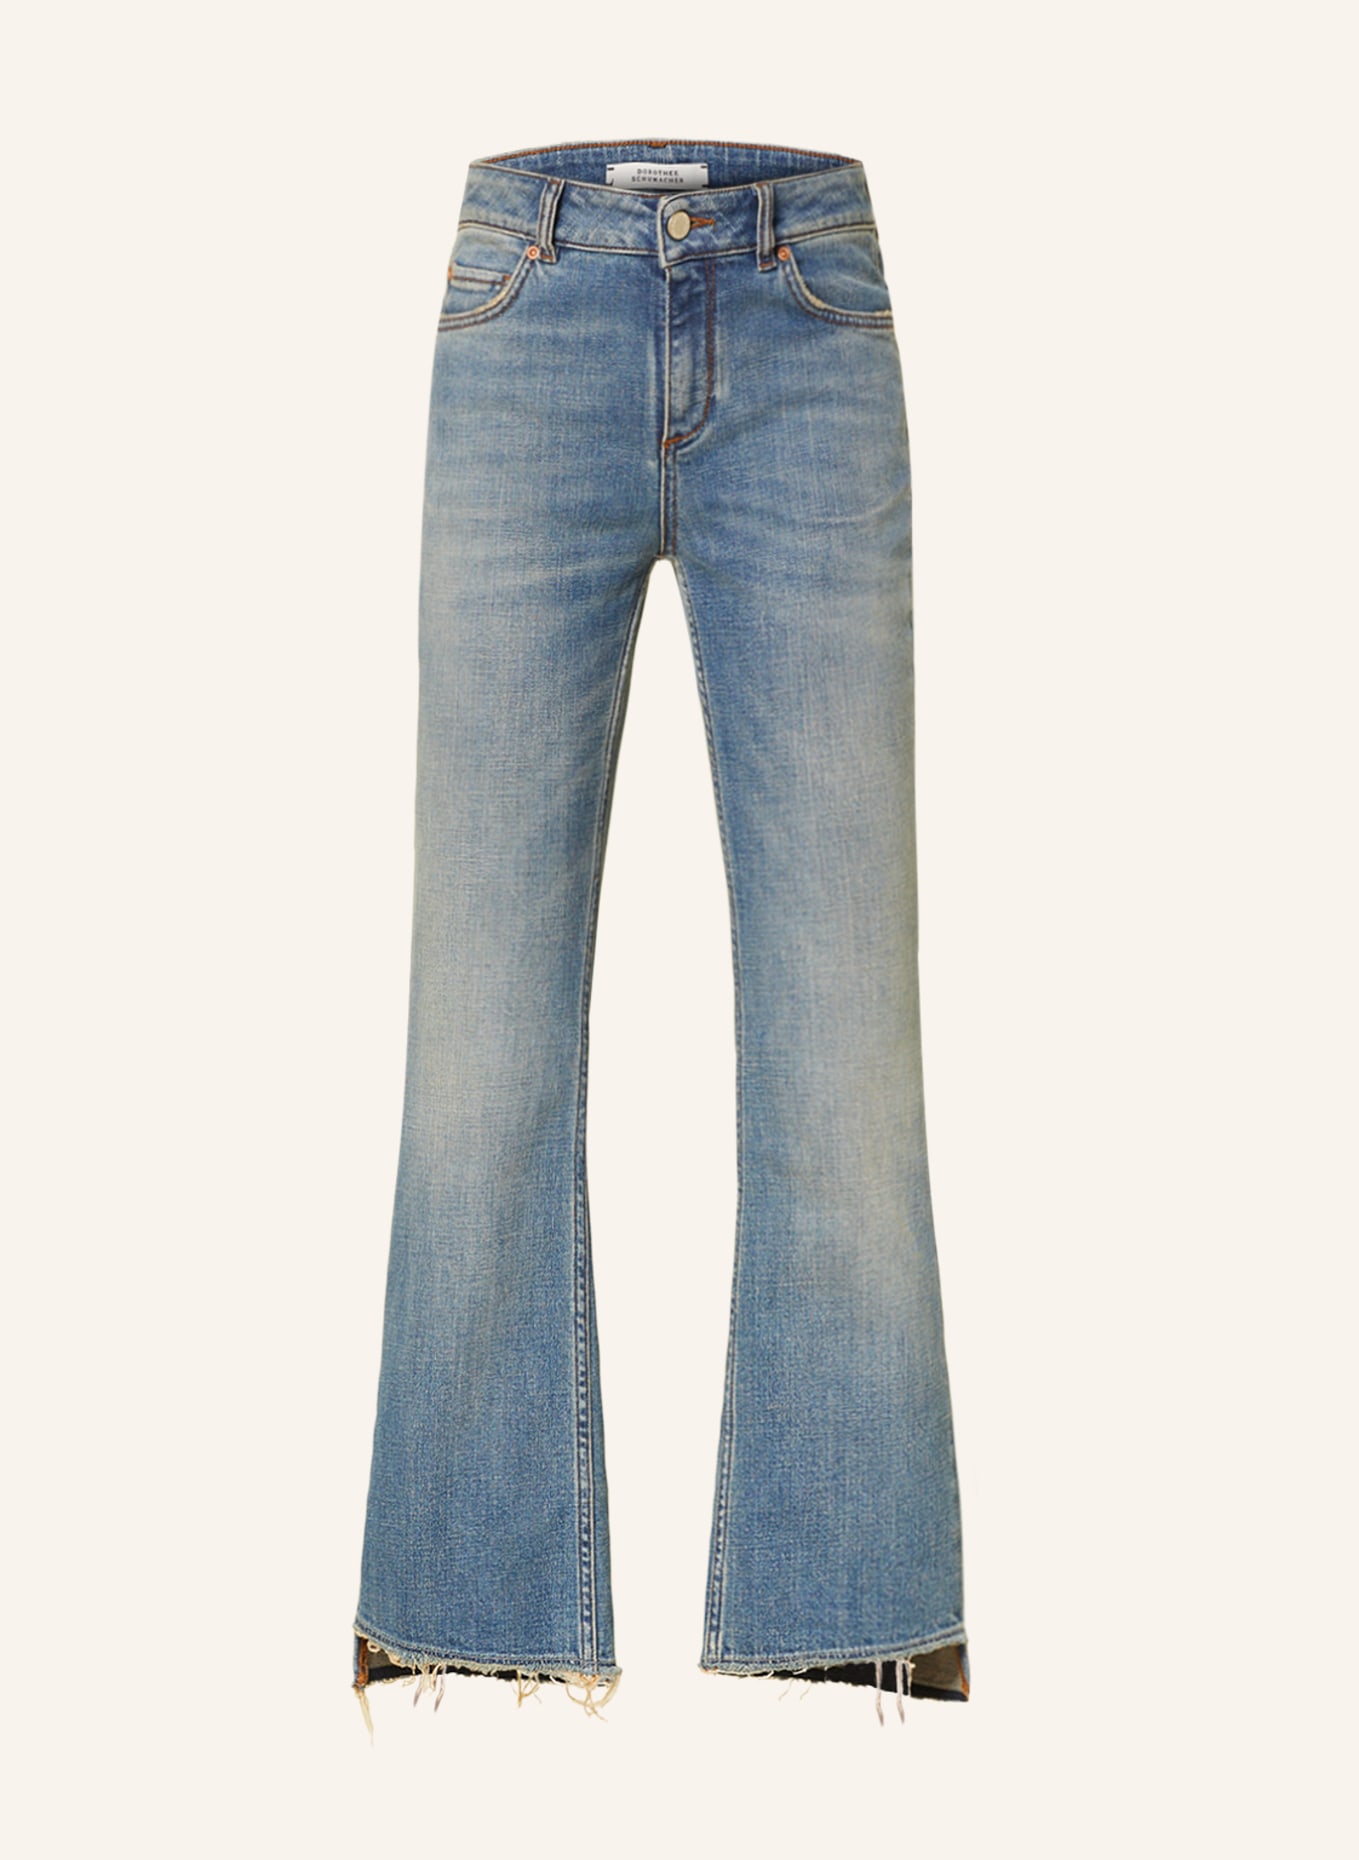 DOROTHEE SCHUMACHER 7/8-Jeans, Farbe: 871 DENIM MIX (Bild 1)